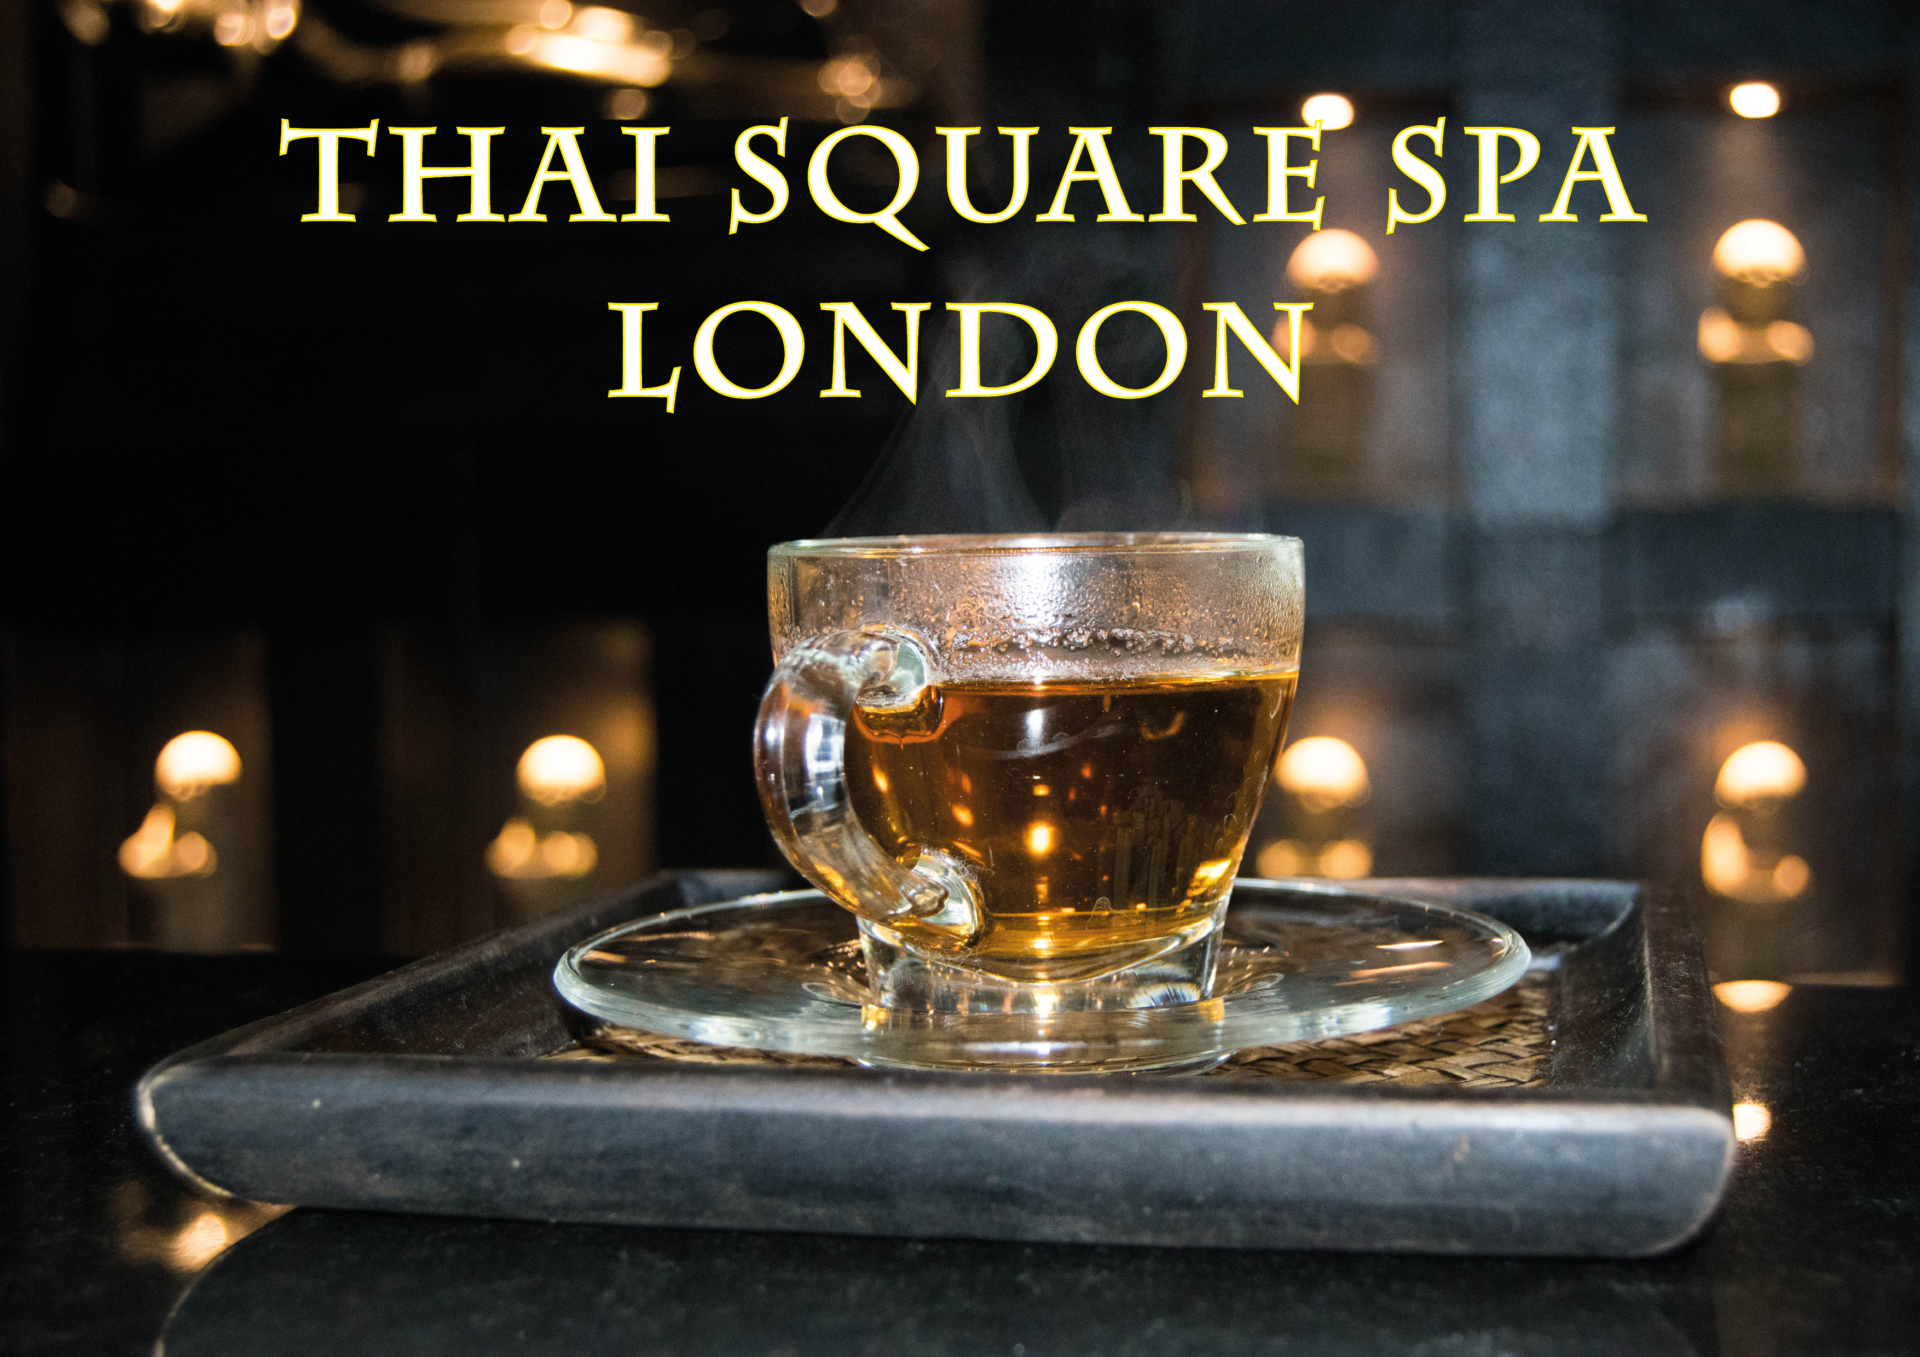 Thai Square Spa London Saharasplash